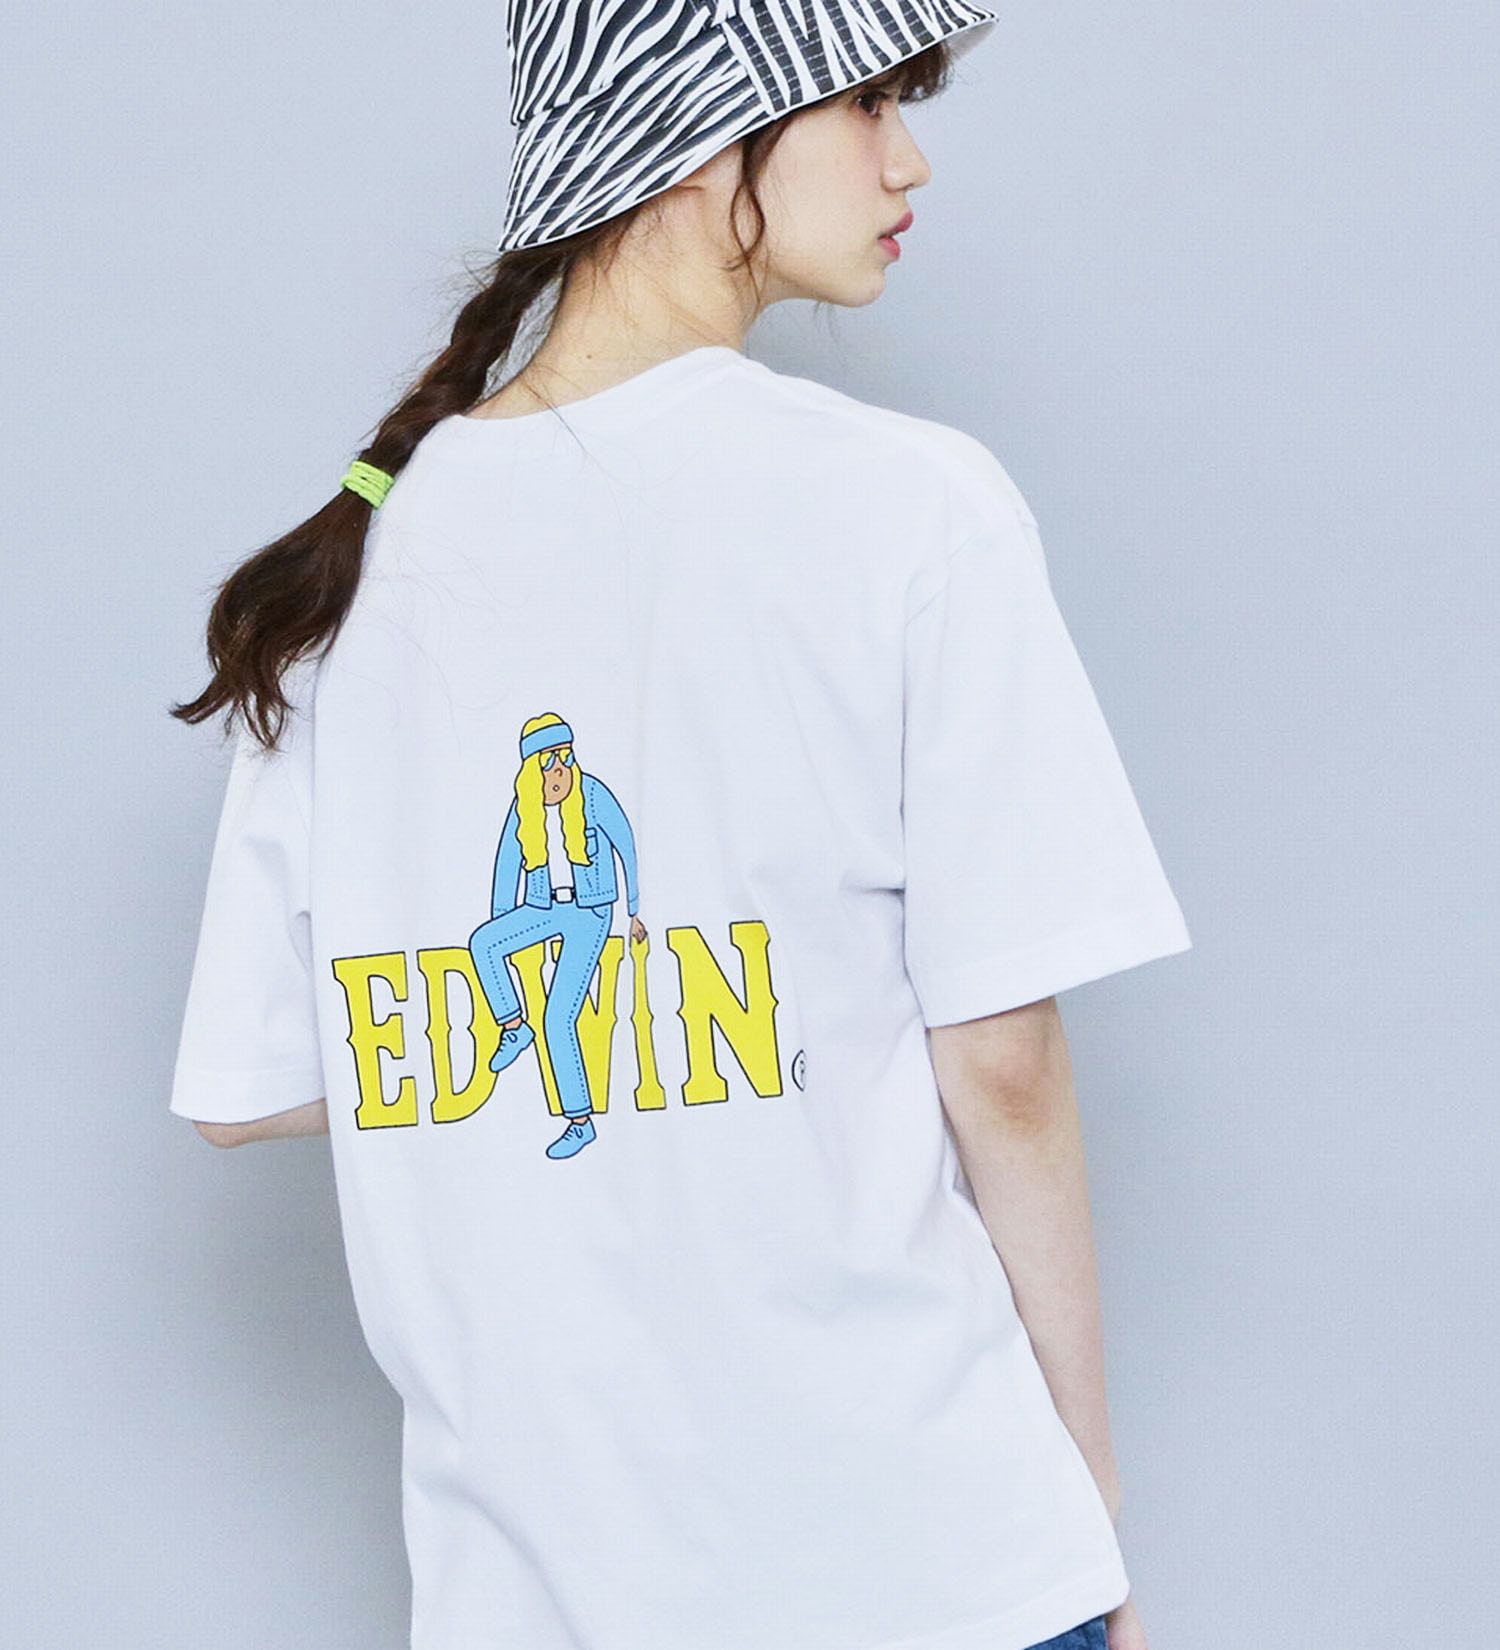 EDWIN(エドウイン)の【SALE】【ユニセックス】EDWIN x JUN OSON アーティストコラボTシャツ|トップス/Tシャツ/カットソー/メンズ|ホワイト2